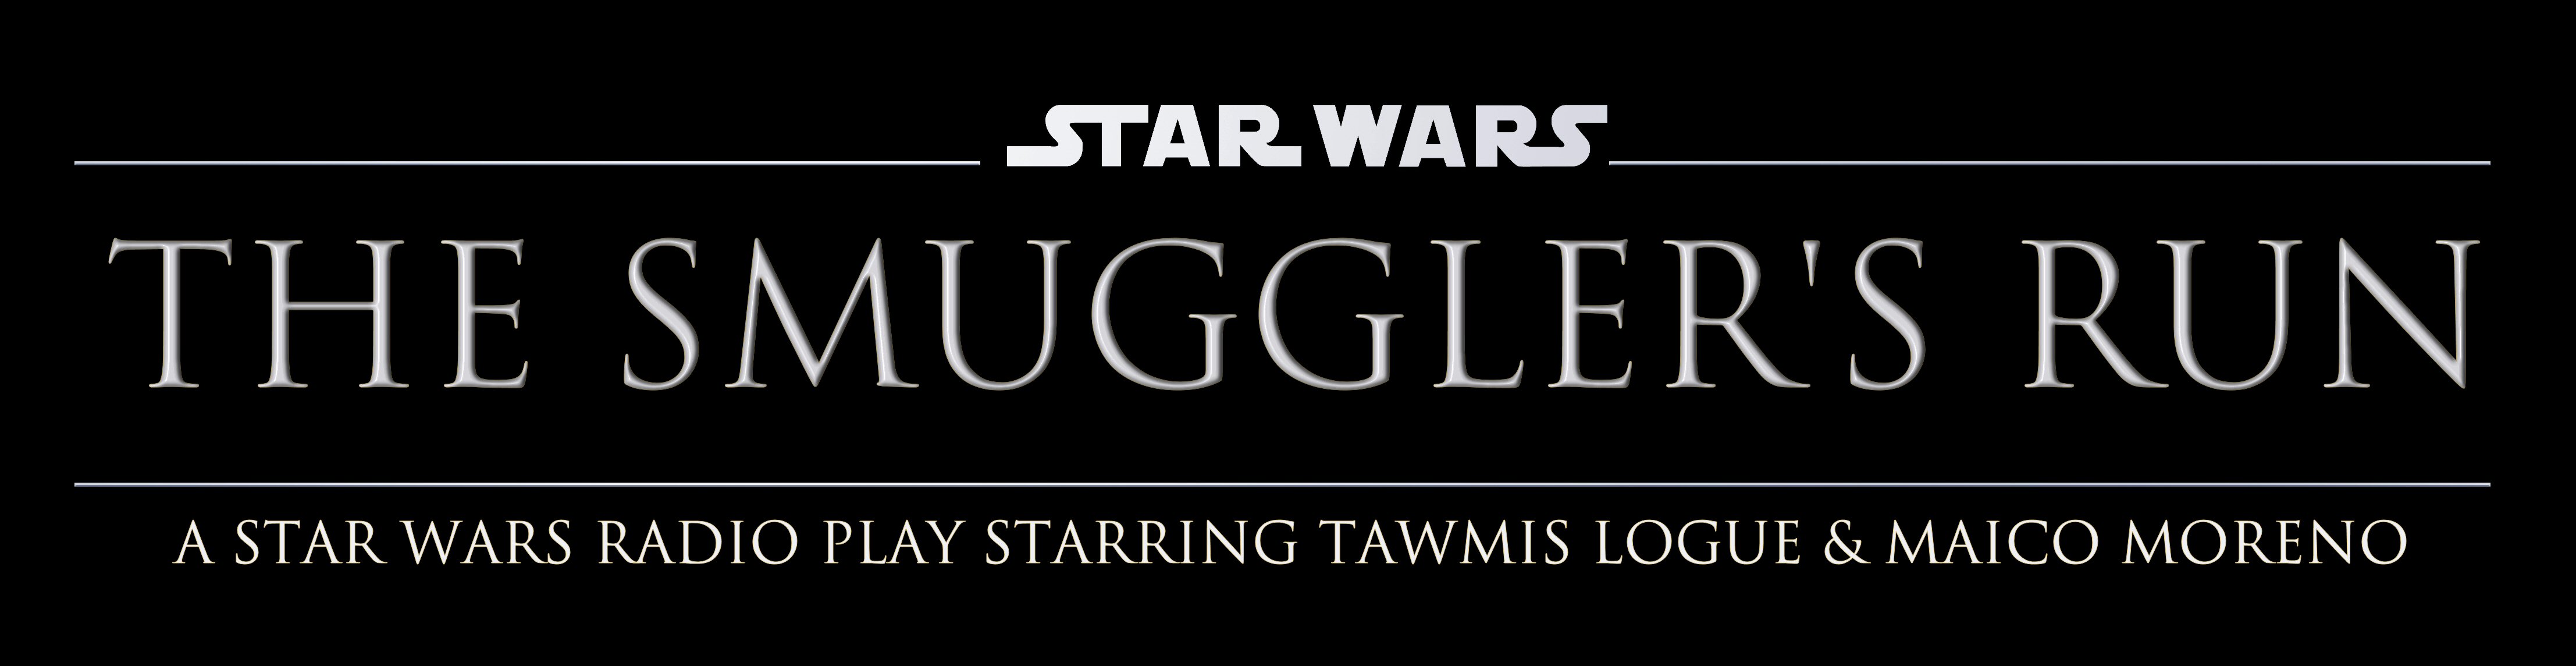 StarWars_TheSmugglersRun_Logo